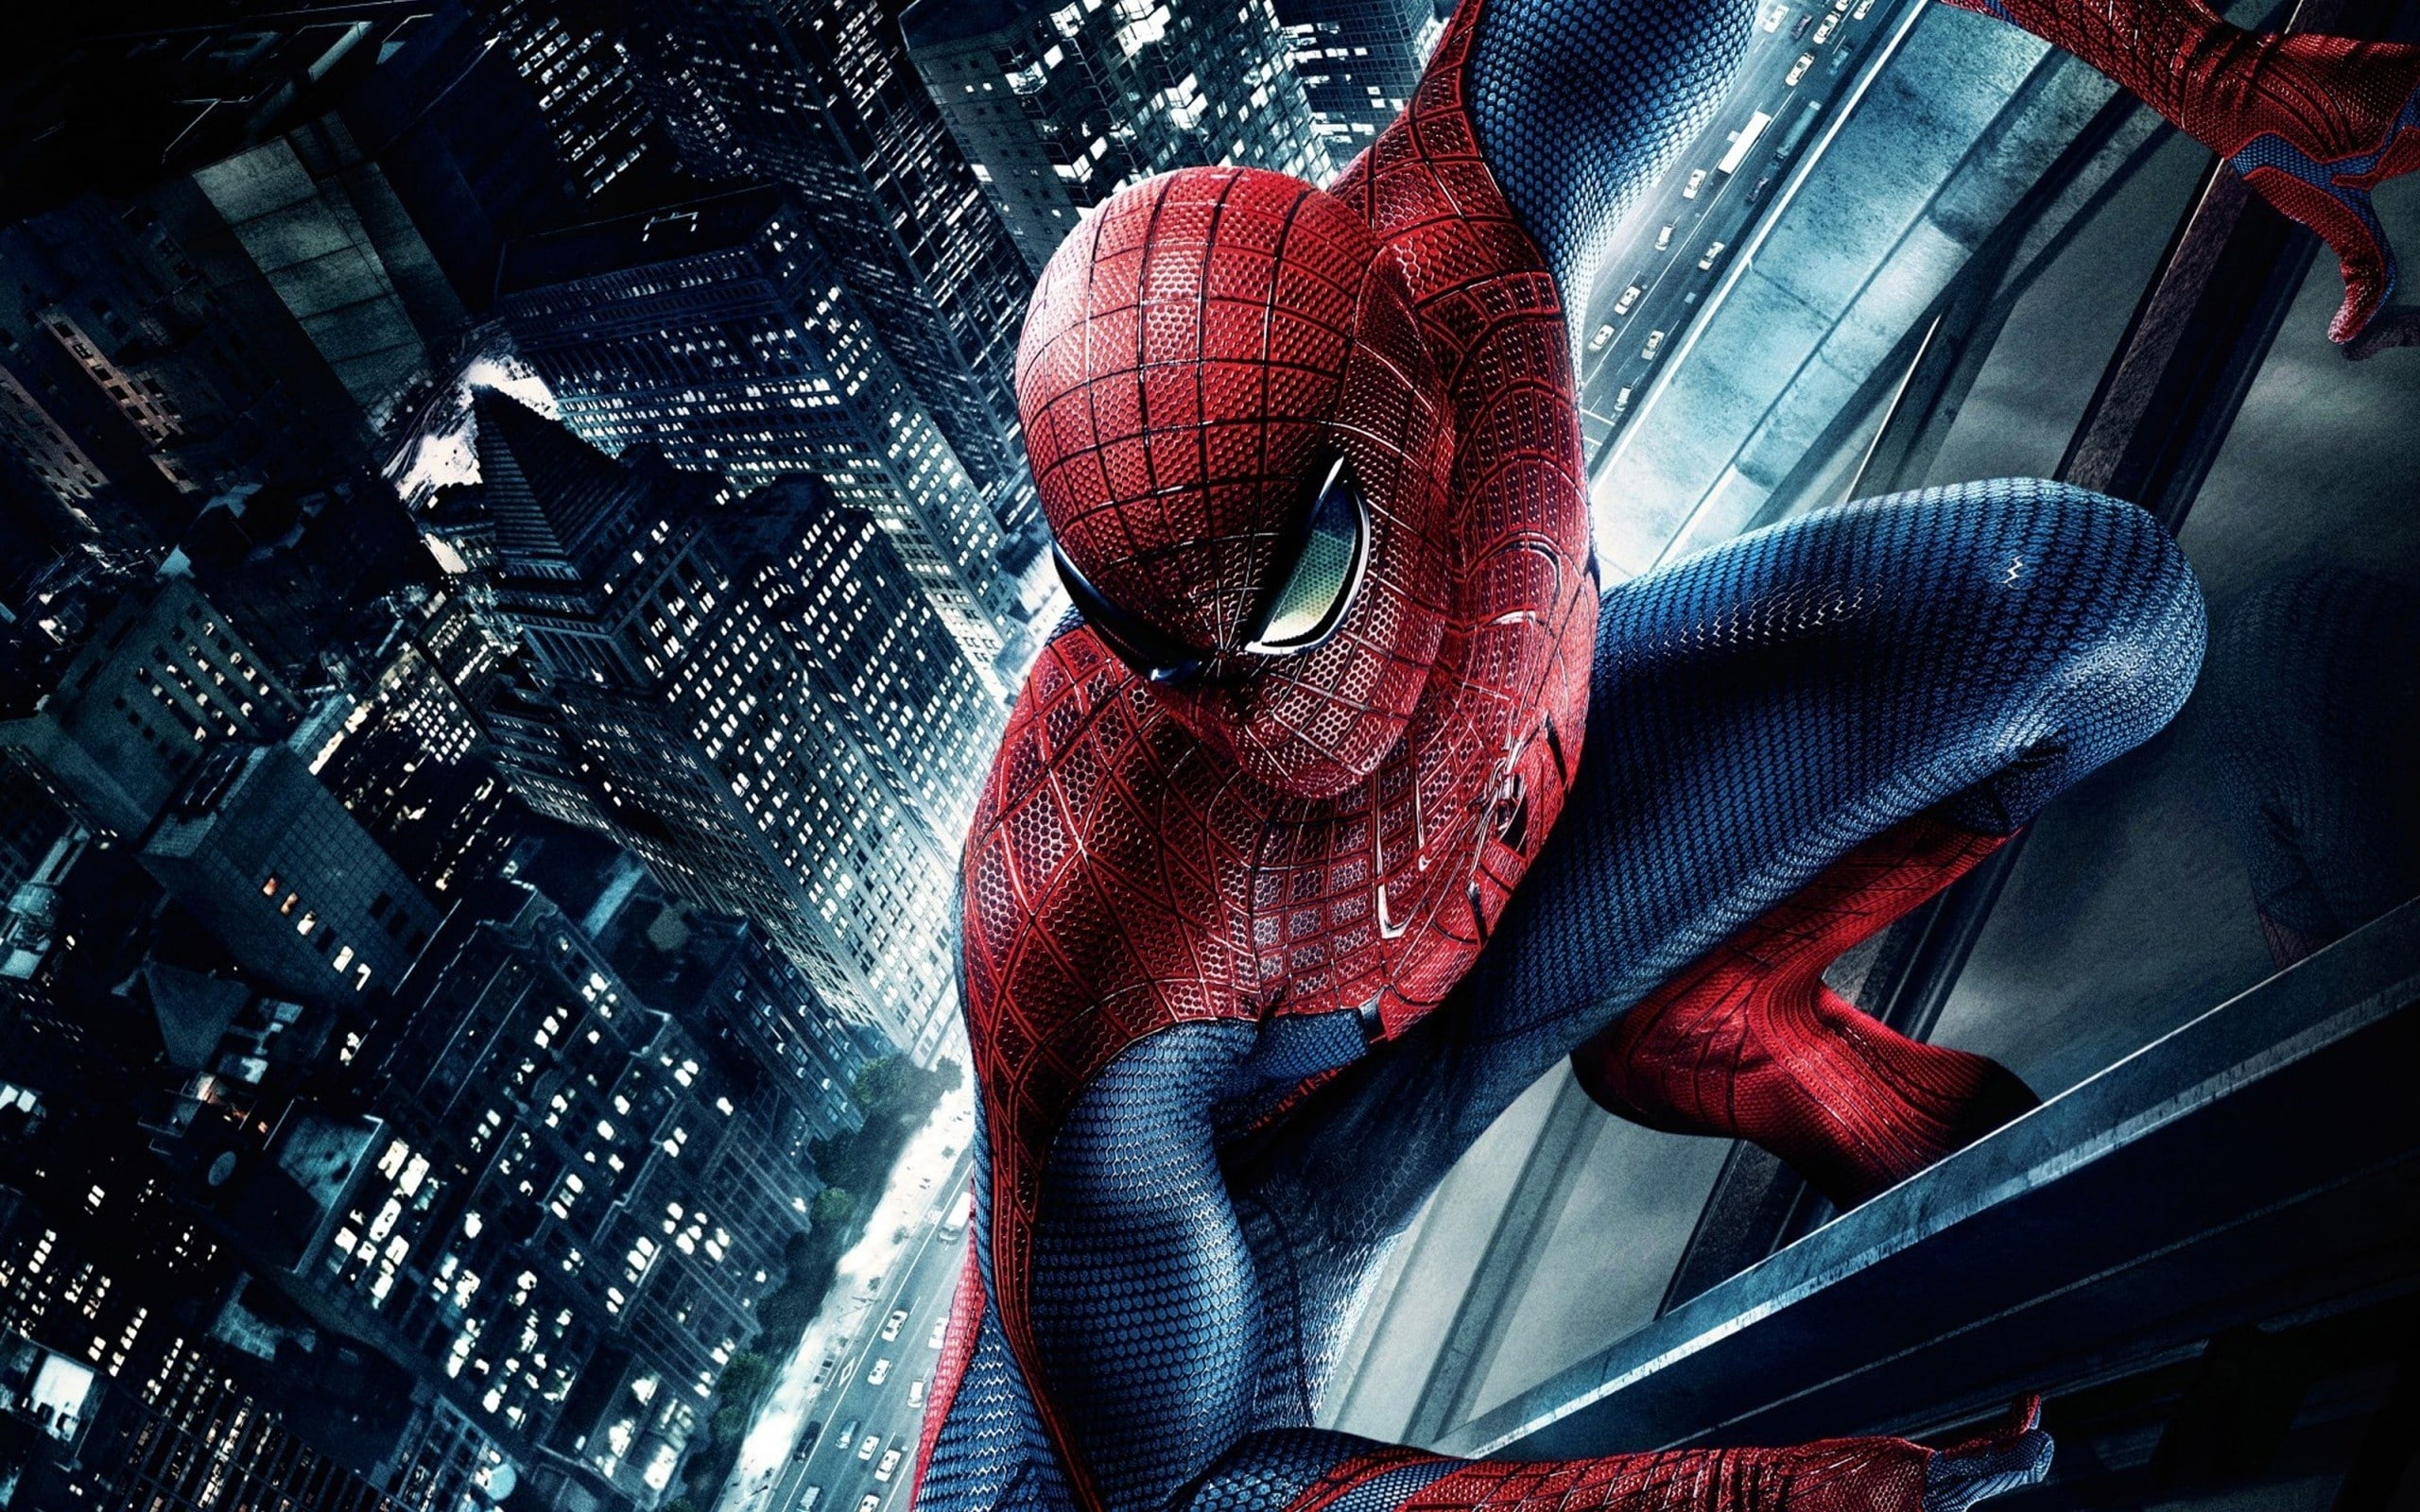 Spider-Man, digital art, The Amazing Spider-Man, movies